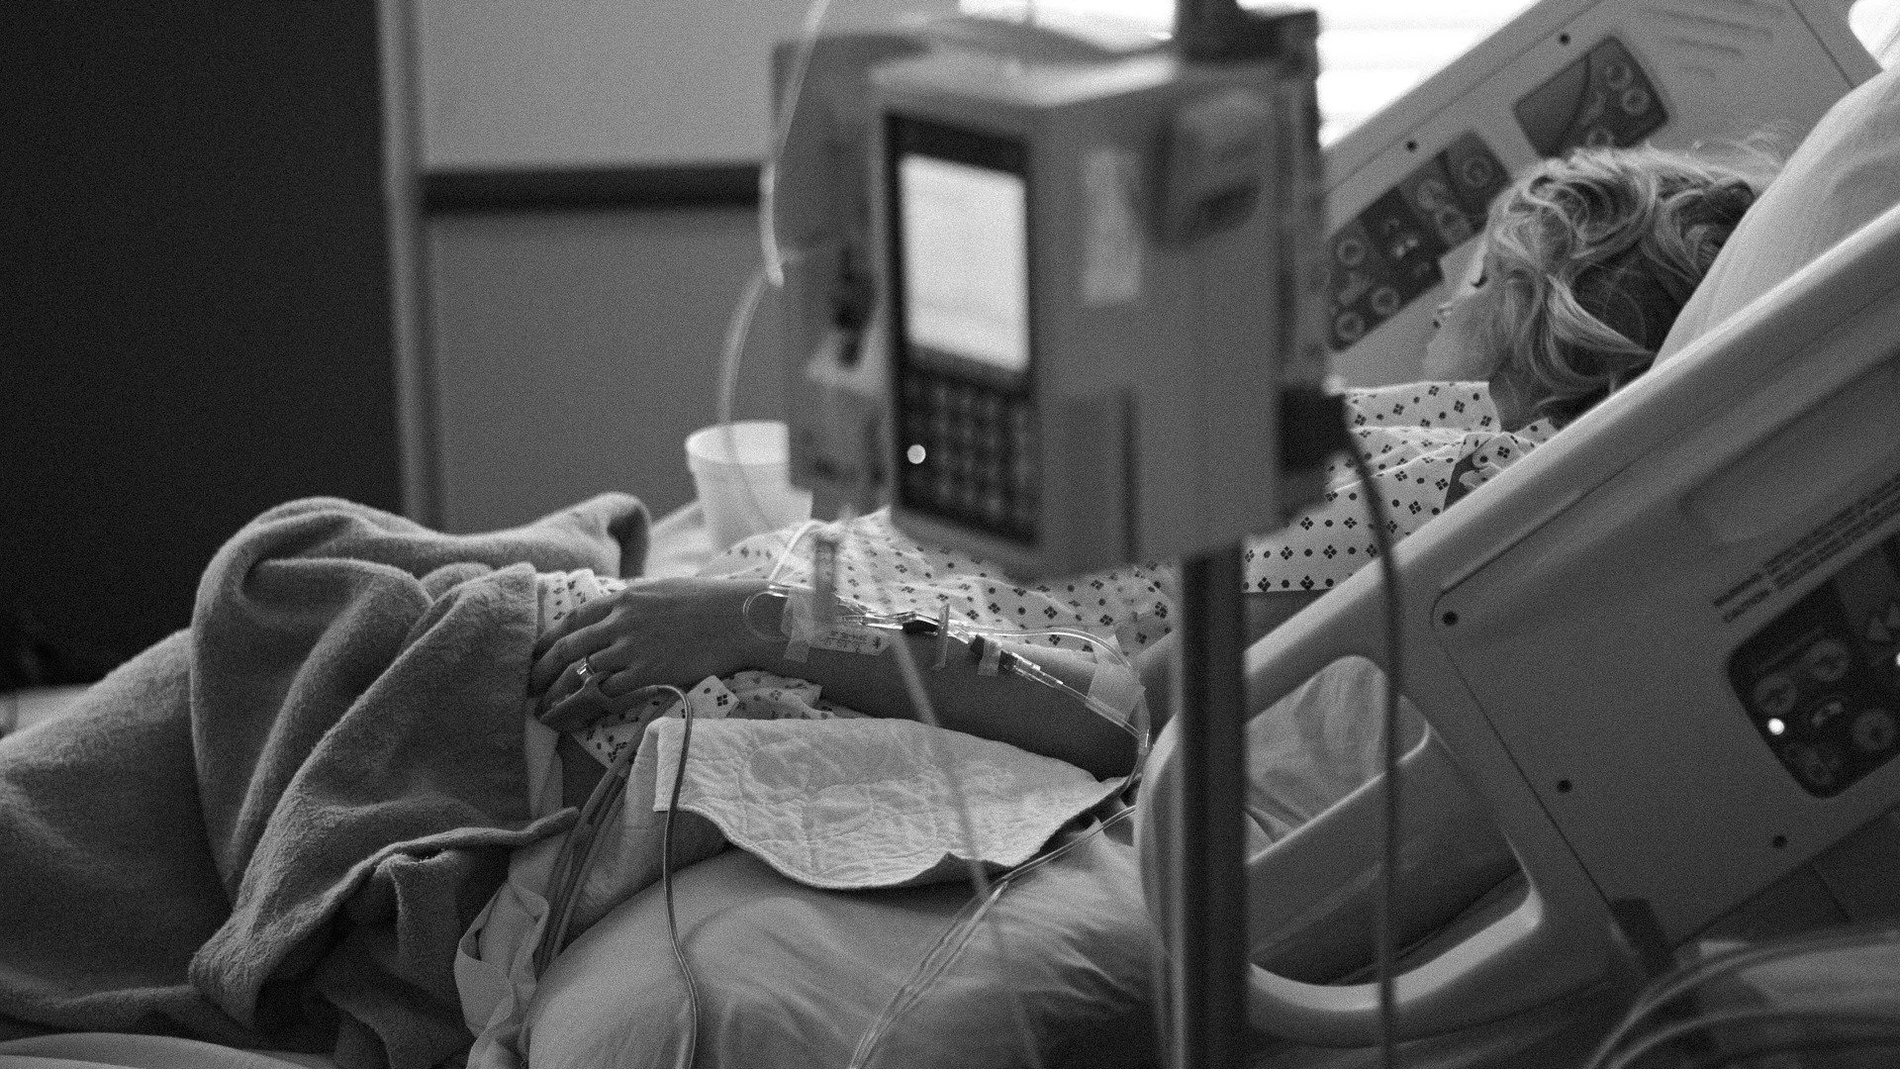 Colegios Oficiales de Médicos apuestan por la sedación paliativa frente a la eutanasia